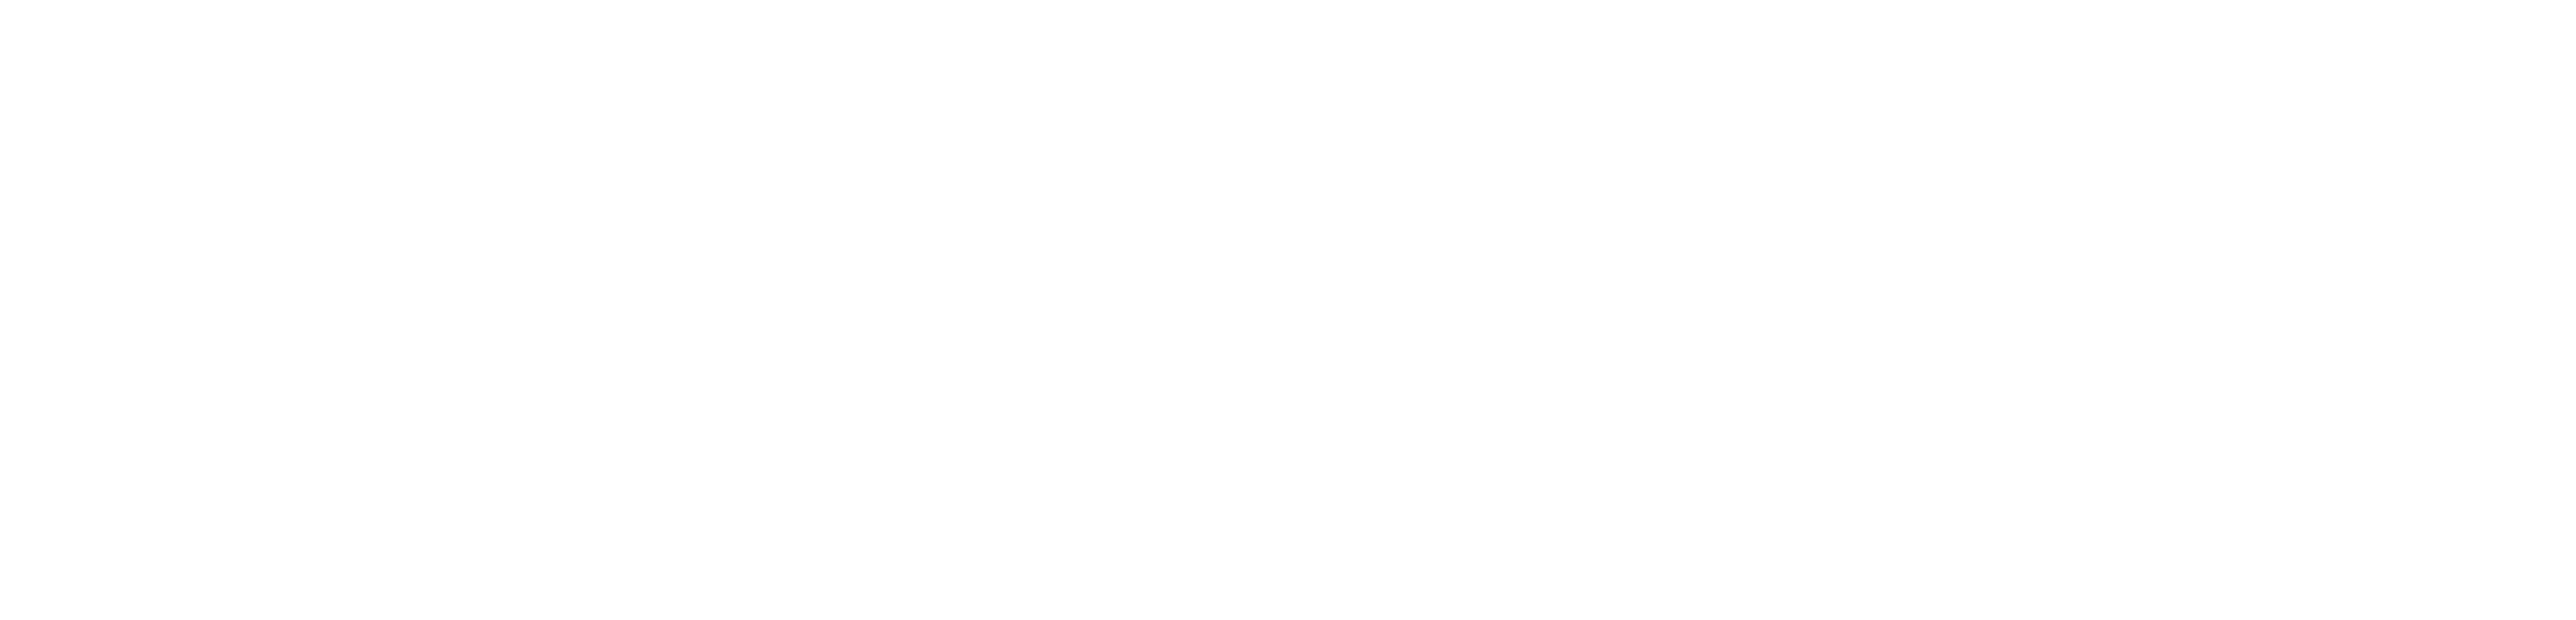 Wickednet Internetagentur Logo weiss